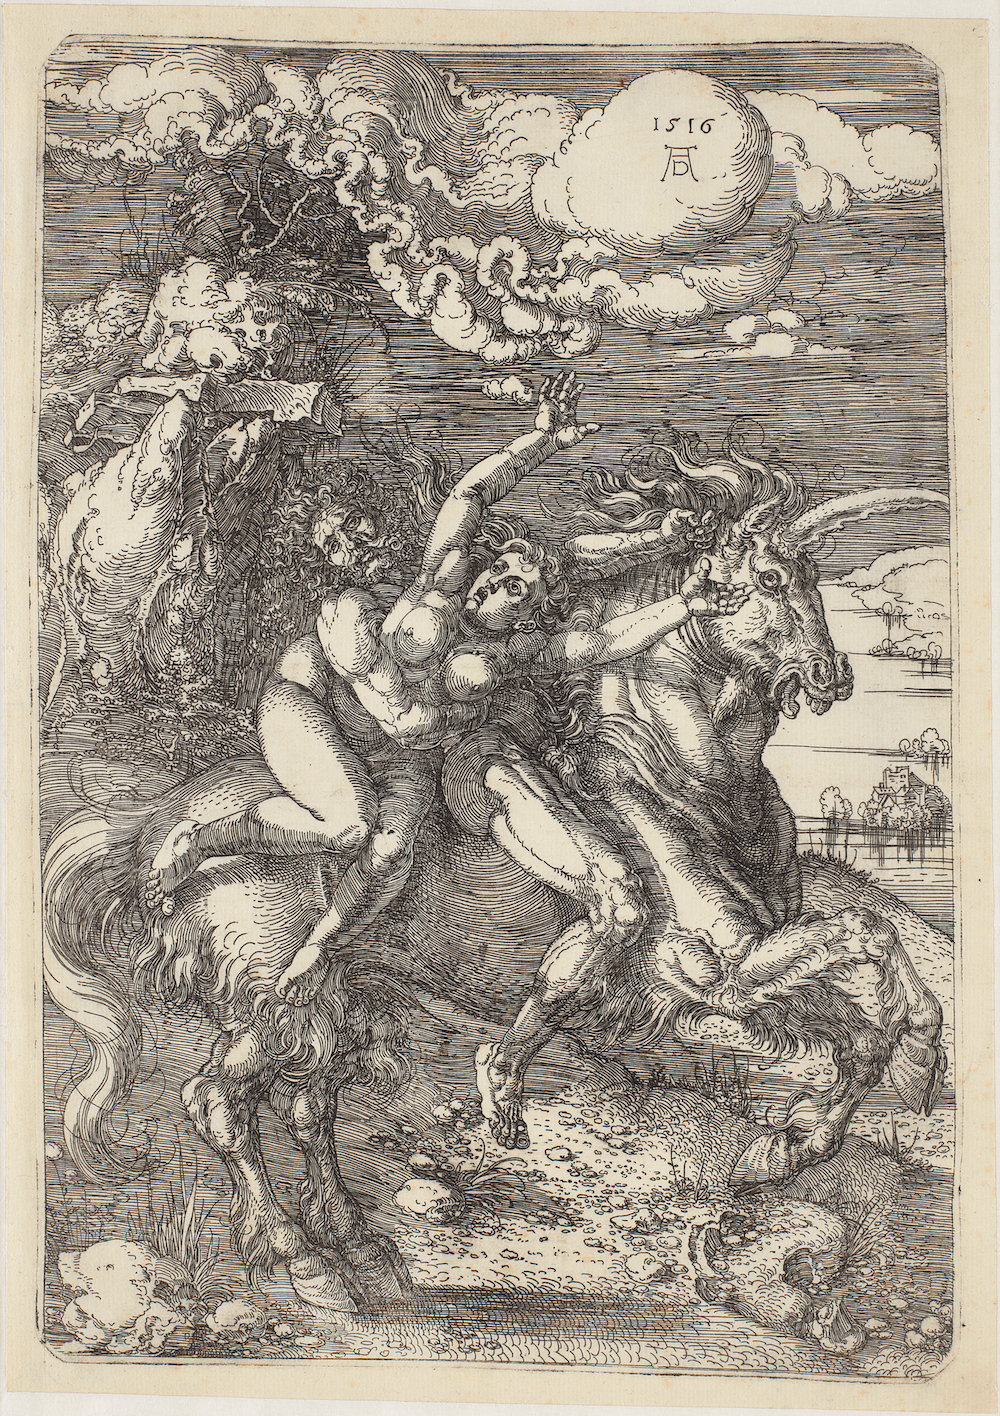 Porwanie na jednorożcu by Albrecht Dürer - 1516 - 393 mm x 230 mm 